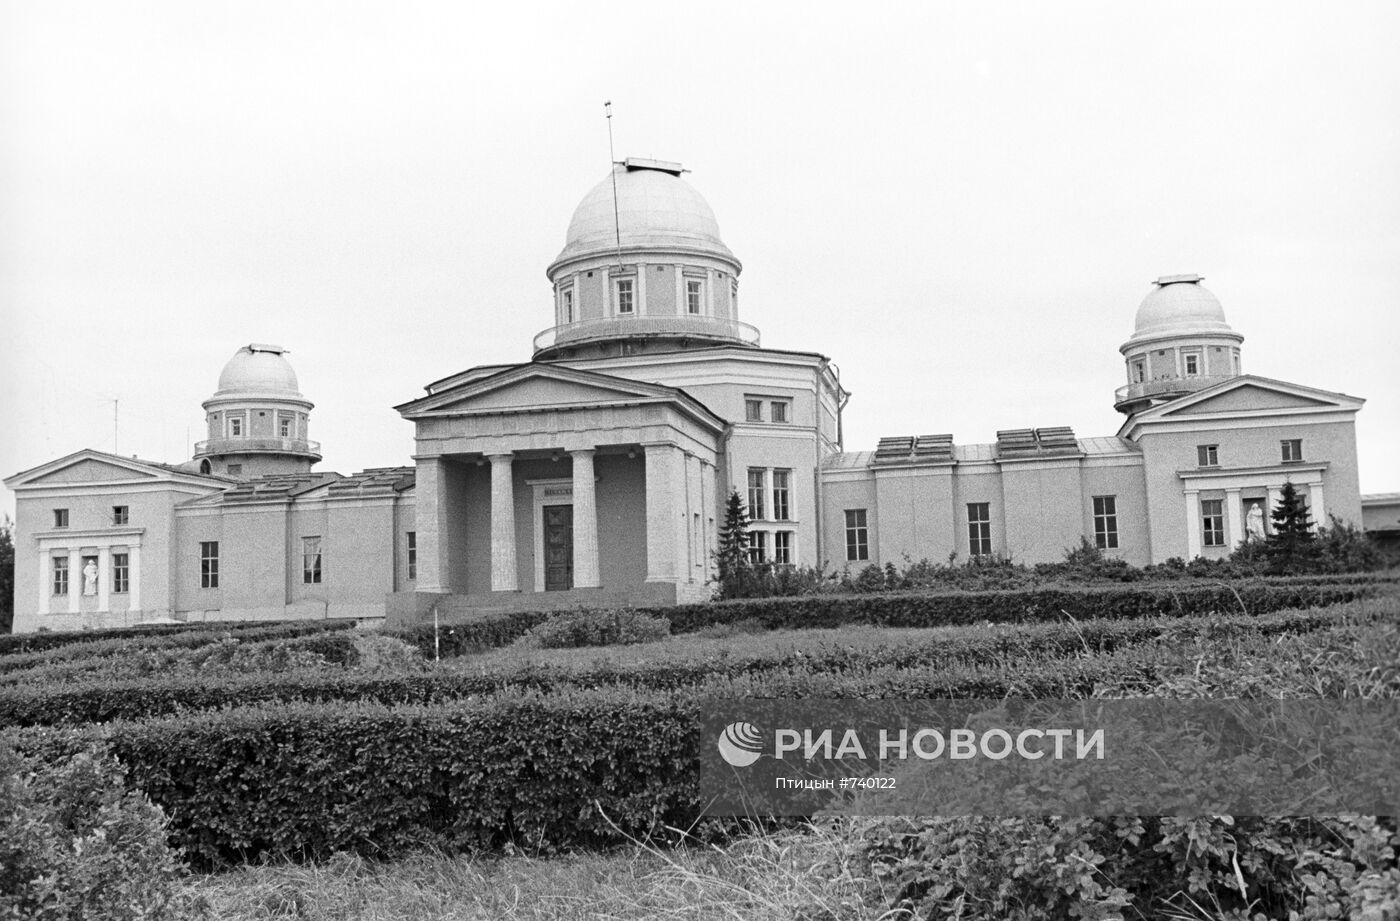 Пулковская астрономическая обсерватория АН СССР